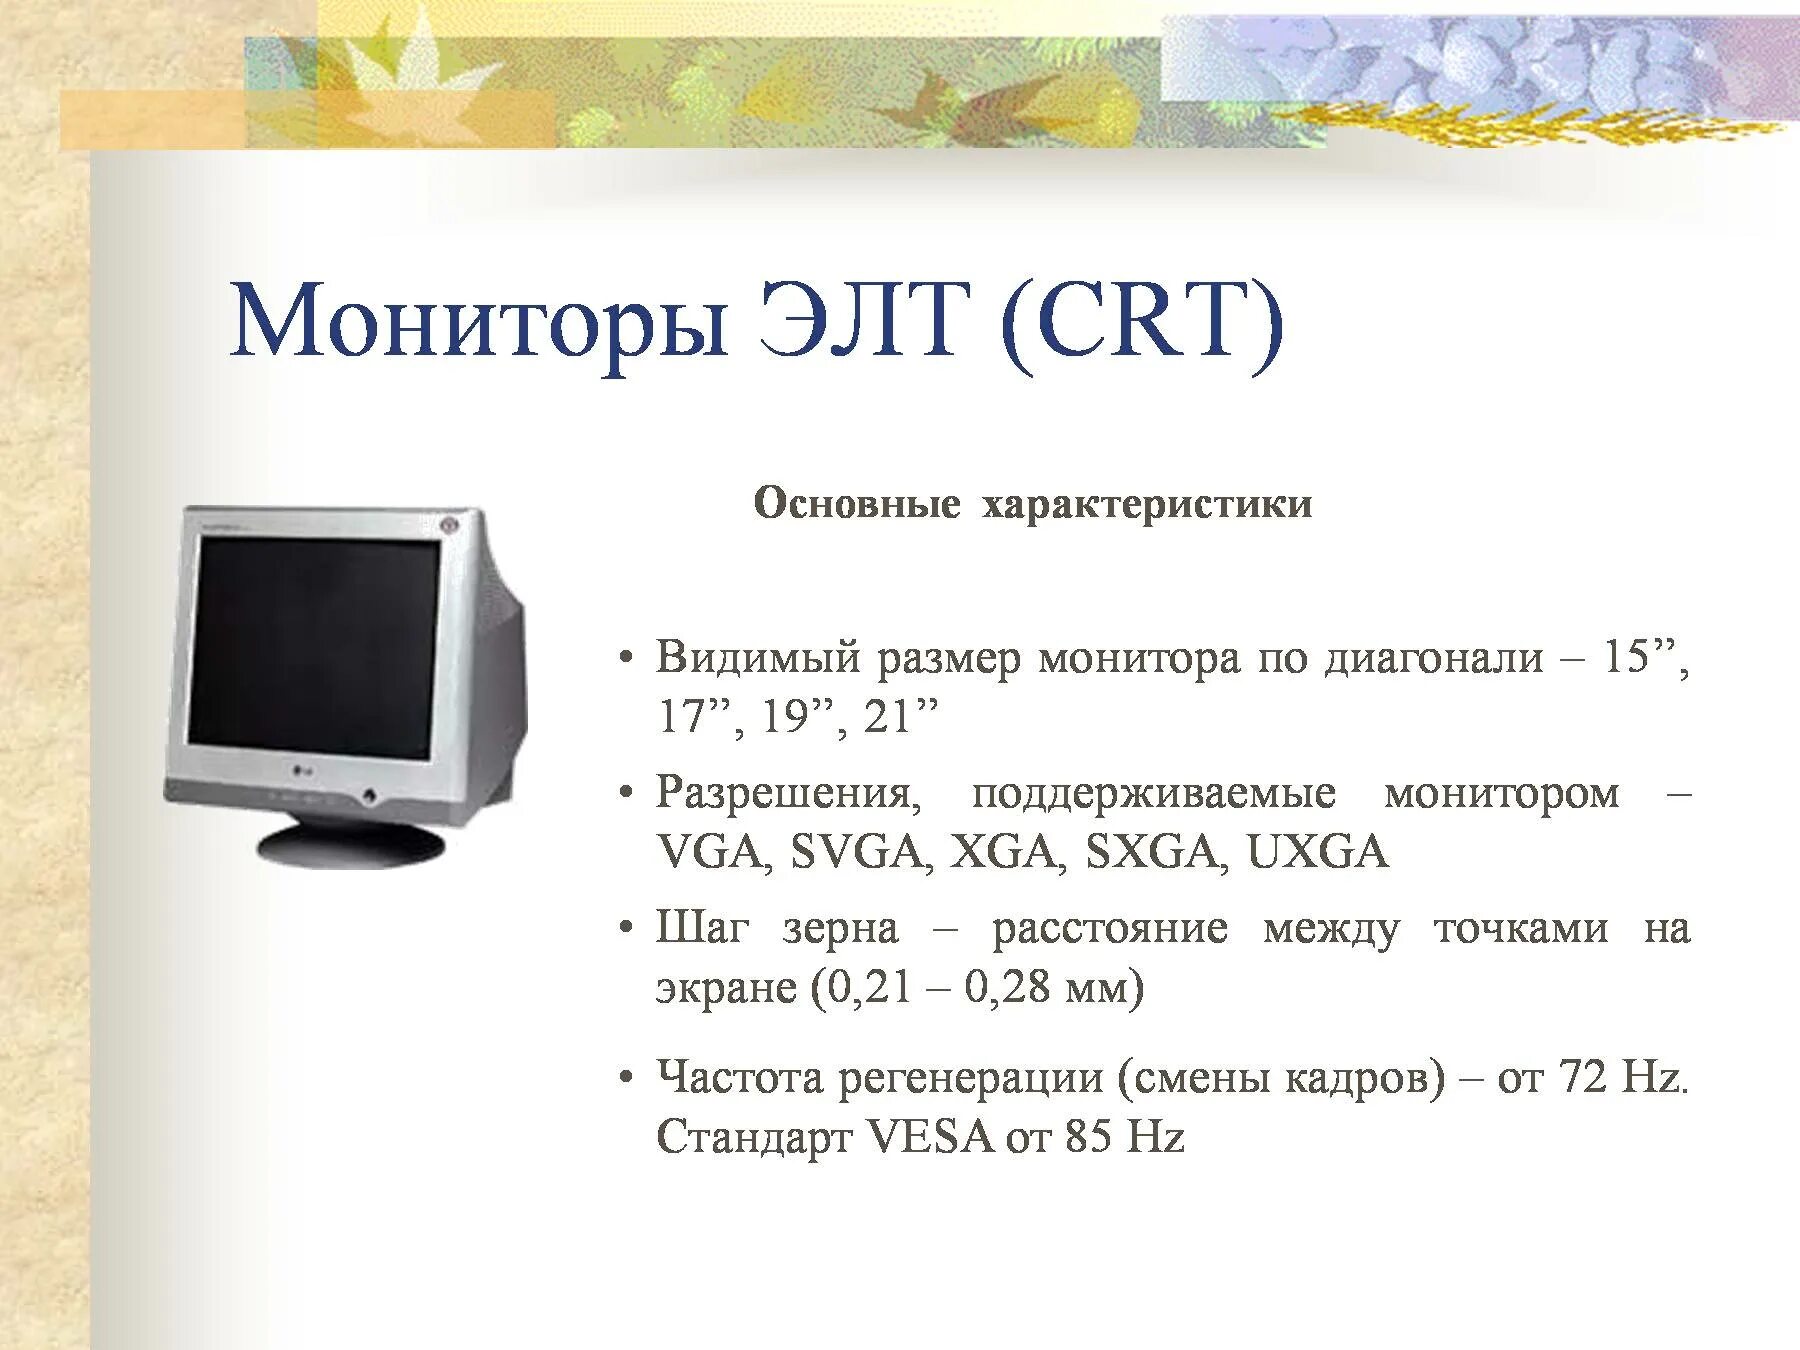 ЭЛТ монитор характеристики. Основные параметры ЭЛТ мониторов. Основные характеристики монитора. CRT монитор характеристика.